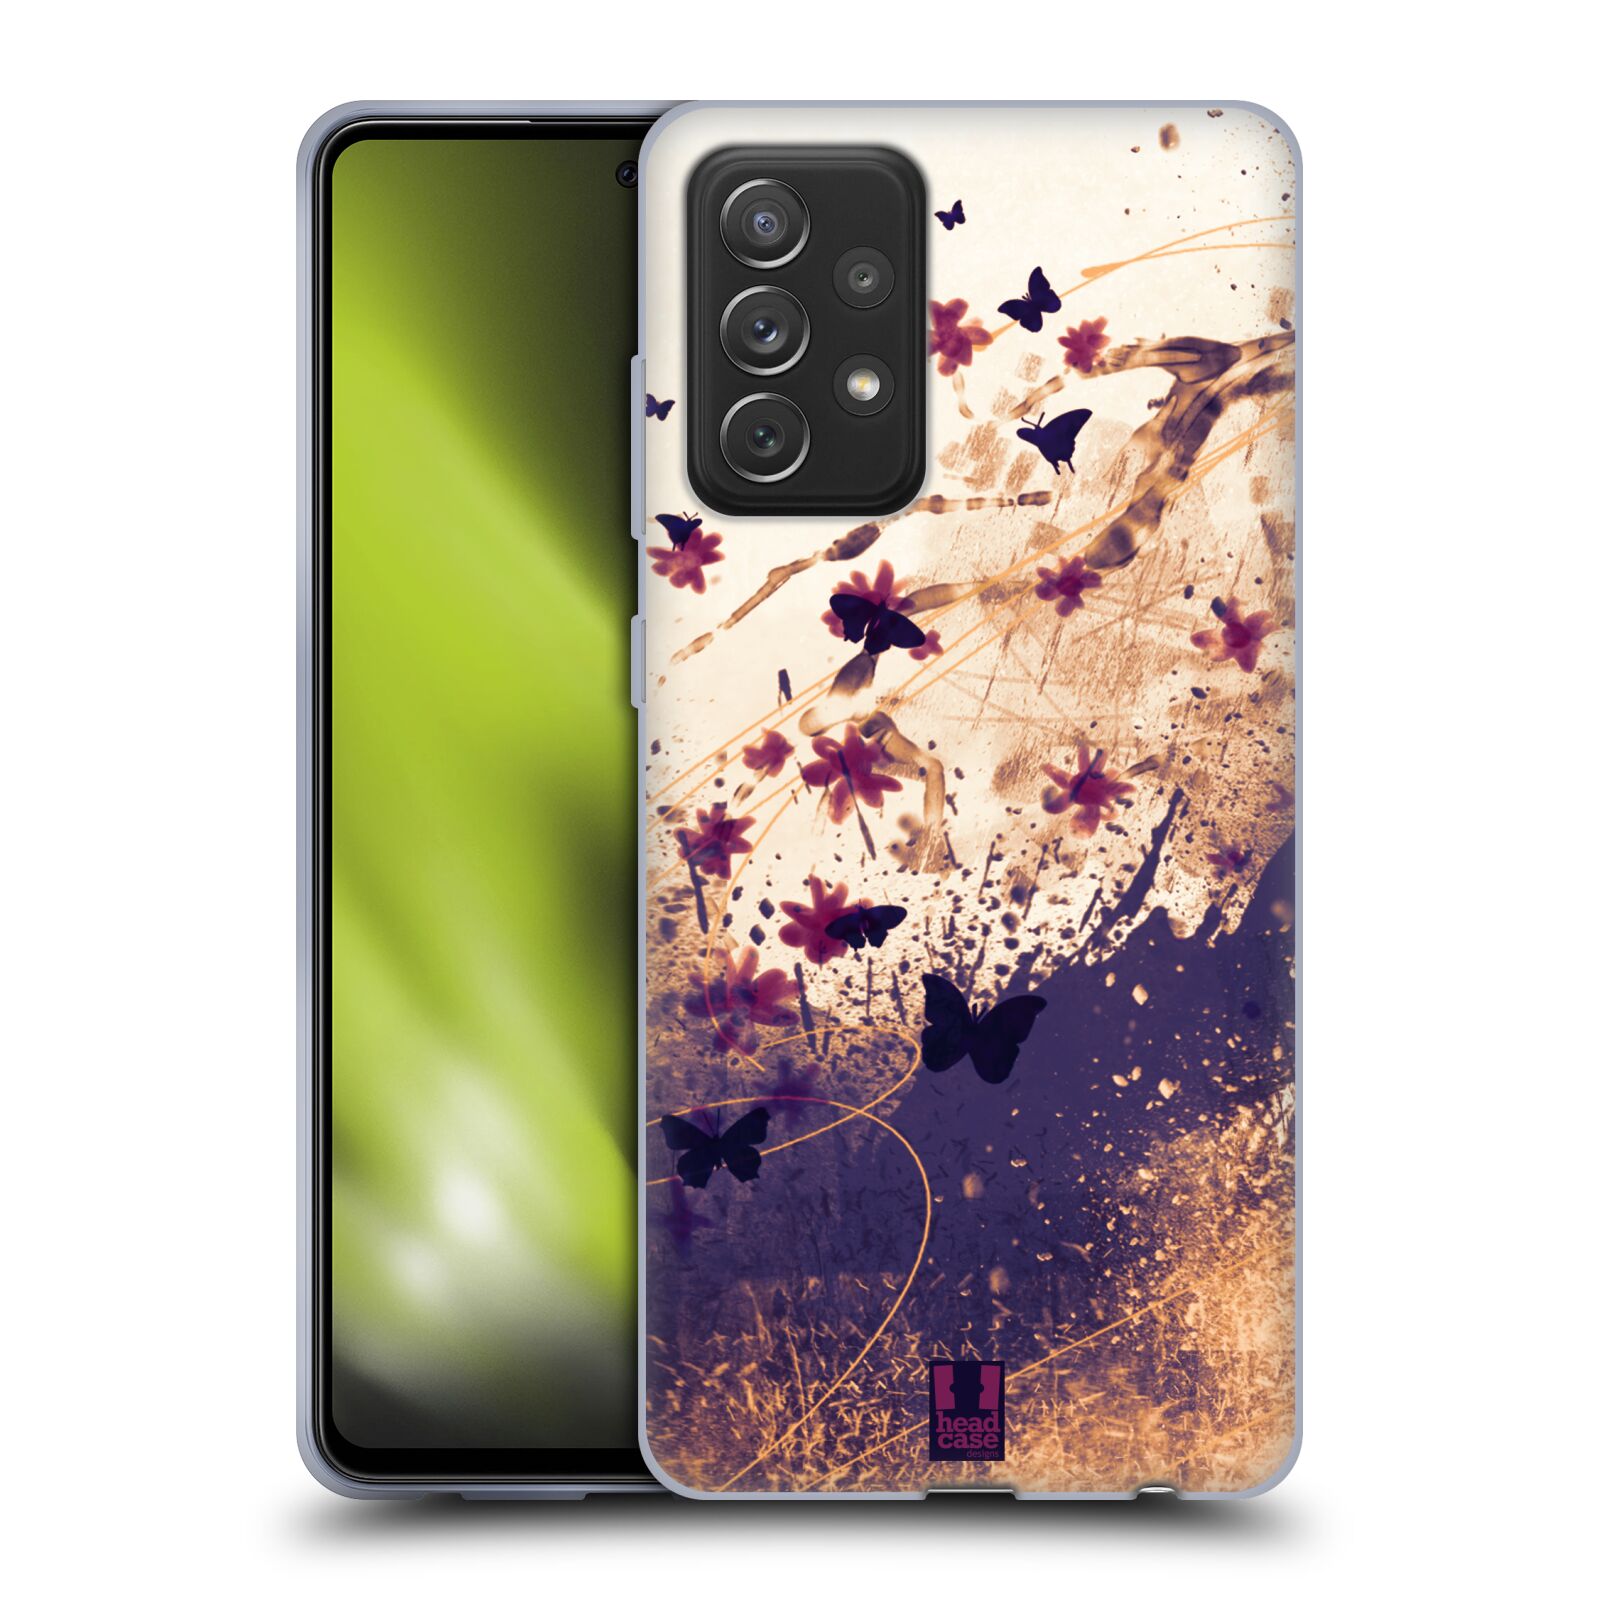 Zadní obal pro mobil Samsung Galaxy A72 / A72 5G - HEAD CASE - Barevné květy a motýlci